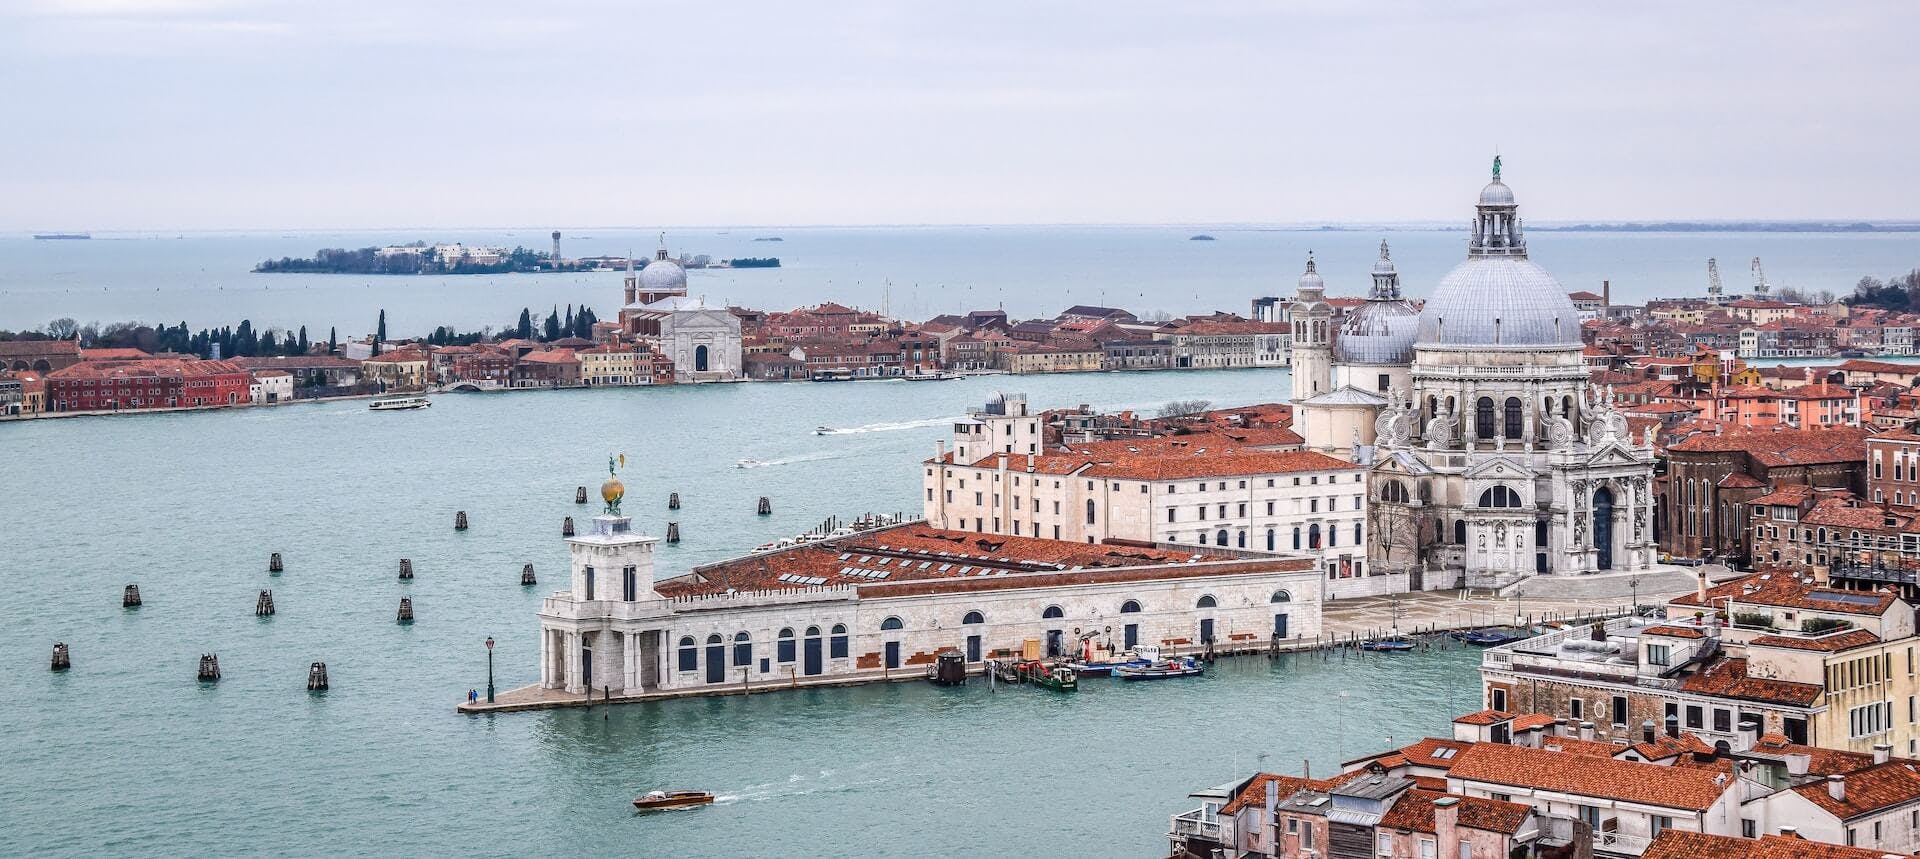 Aerial view of Venice overlooking the Basilica di Santa Maria della Salute